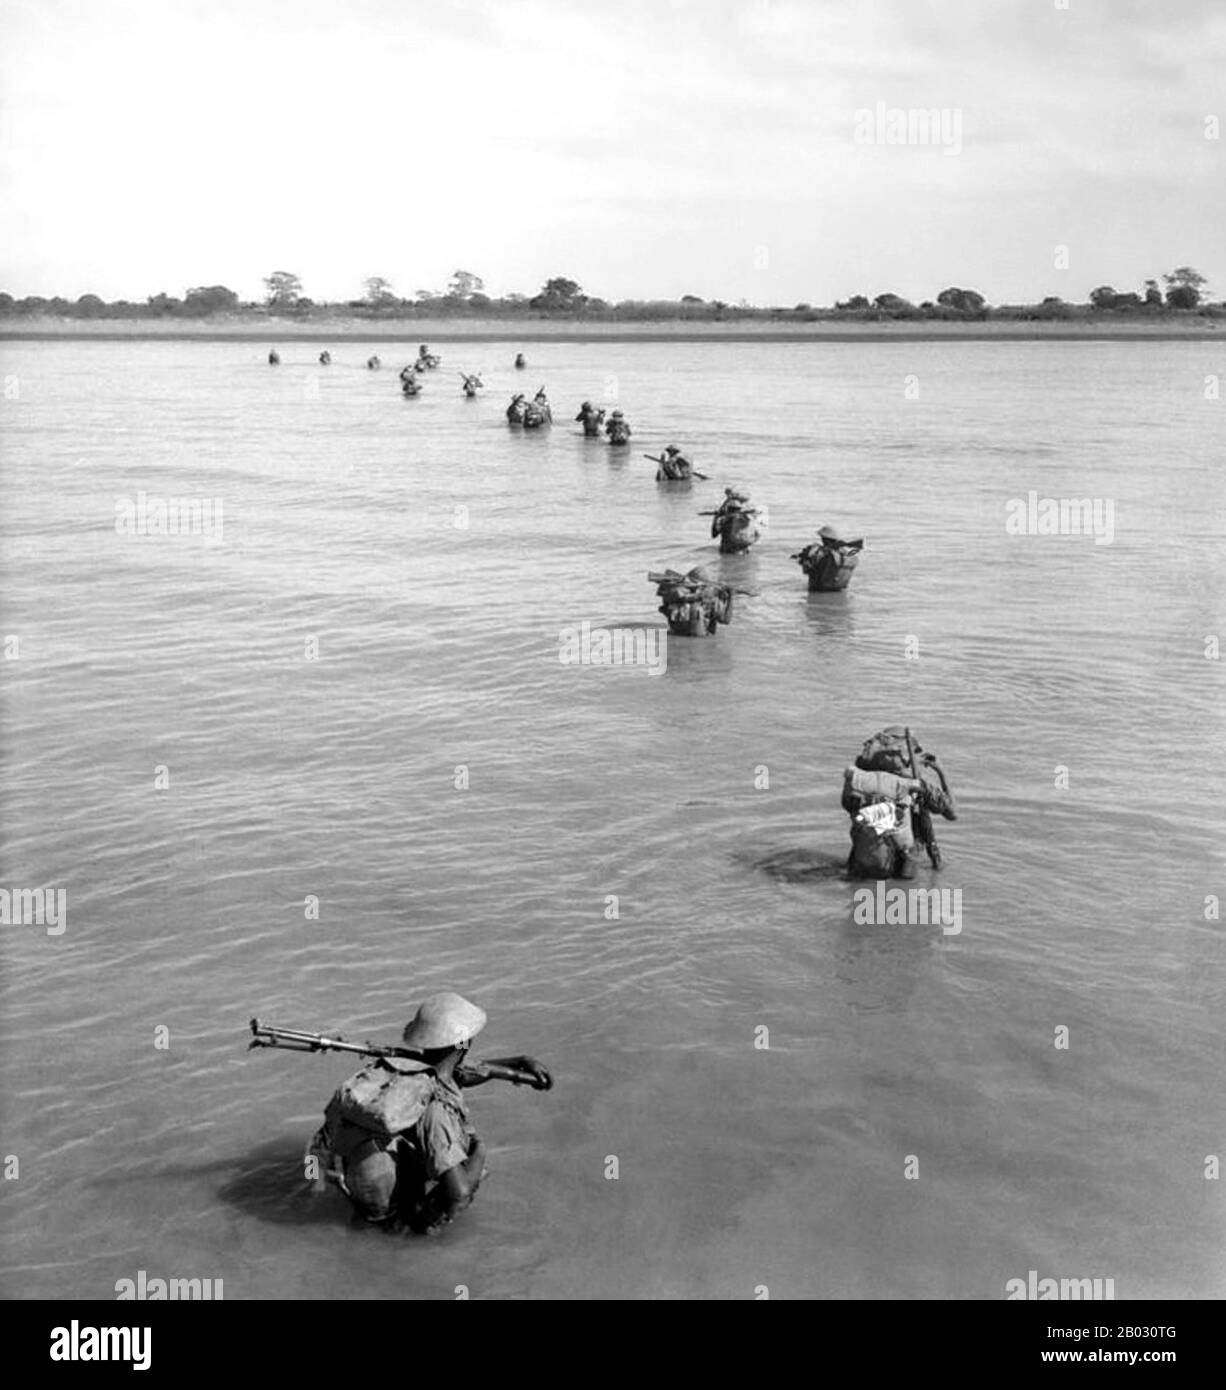 L'isola di Ramree (anche isola di Yangbye o isola di Yanbye) è un'isola al largo della costa dello Stato di Rakhine, Birmania. L'area dell'isola e' di circa 1.350 chilometri quadrati (520 miglia quadrati) e il principale centro abitato e' Ramree. Durante la seconda guerra mondiale la battaglia di Ramree Island fu combattuta nel gennaio e nel febbraio 1945, come parte dell'offensiva britannica 14th Army 1944/45 sul fronte meridionale della Campagna Burma. Al termine della battaglia, i soldati giapponesi furono costretti nelle paludi che circondano l'isola, e si dice che i coccodrilli di acqua salata ne abbiano mangiati molti. Foto Stock